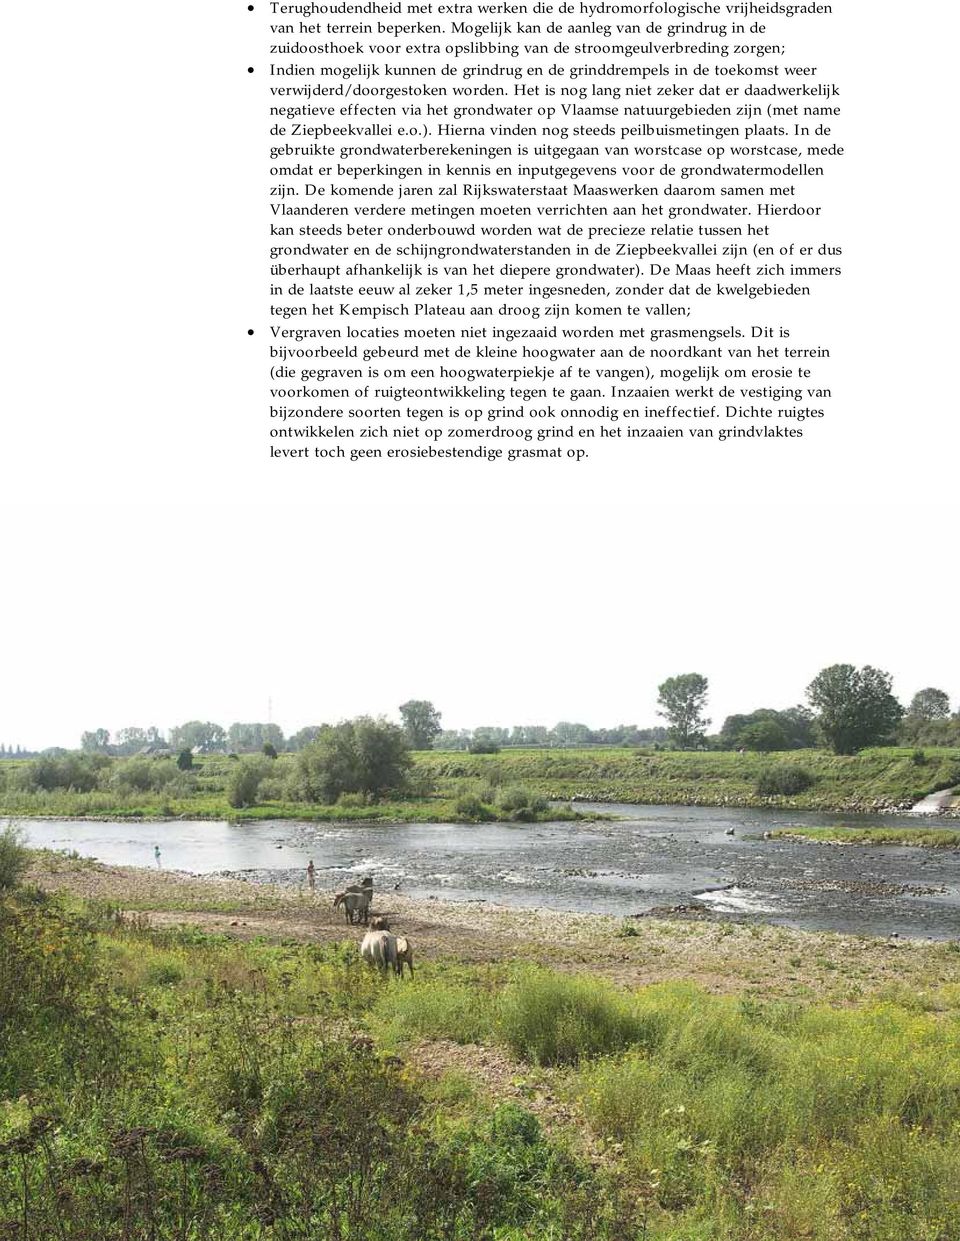 verwijderd/doorgestoken worden. Het is nog lang niet zeker dat er daadwerkelijk negatieve effecten via het grondwater op Vlaamse natuurgebieden zijn (met name de Ziepbeekvallei e.o.).